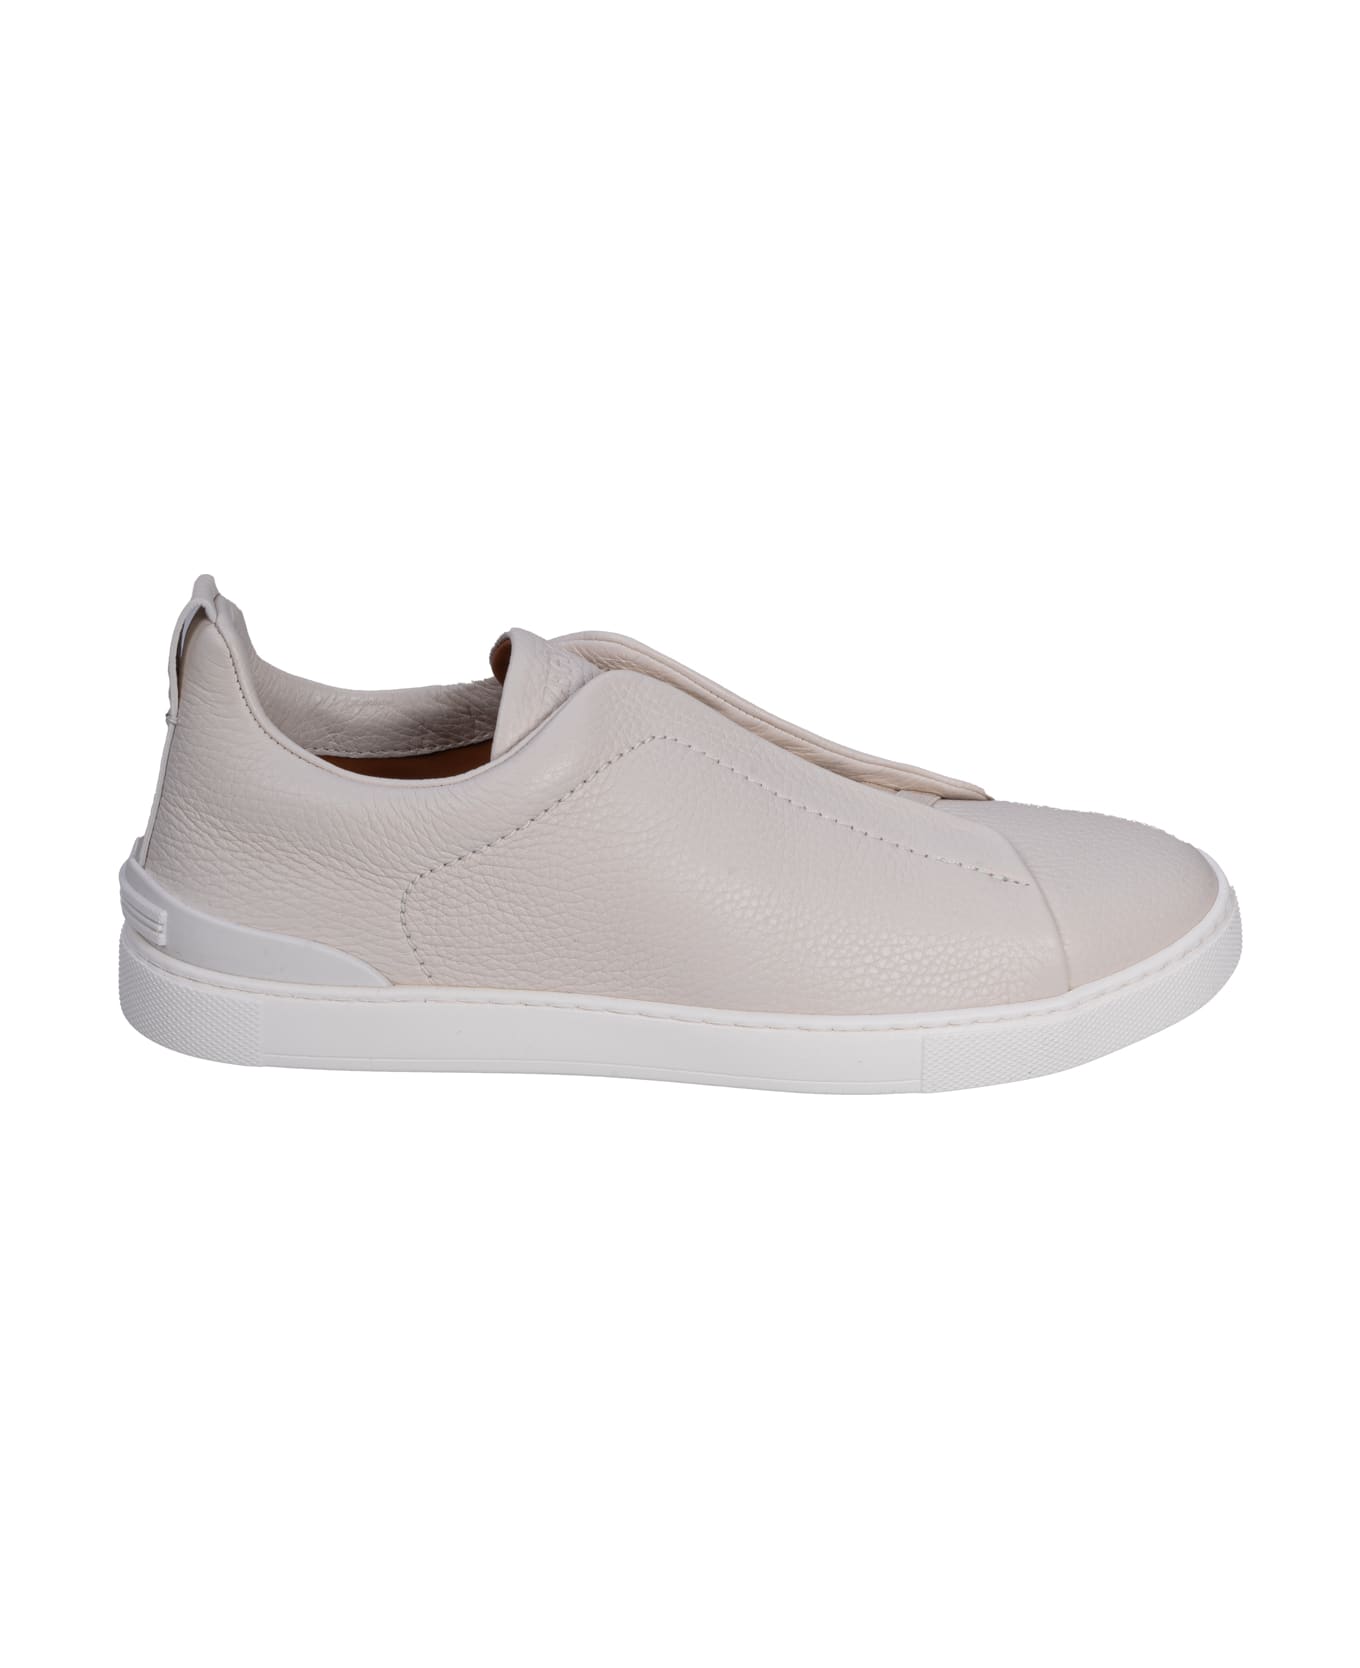 Zegna Flat Shoes White - White